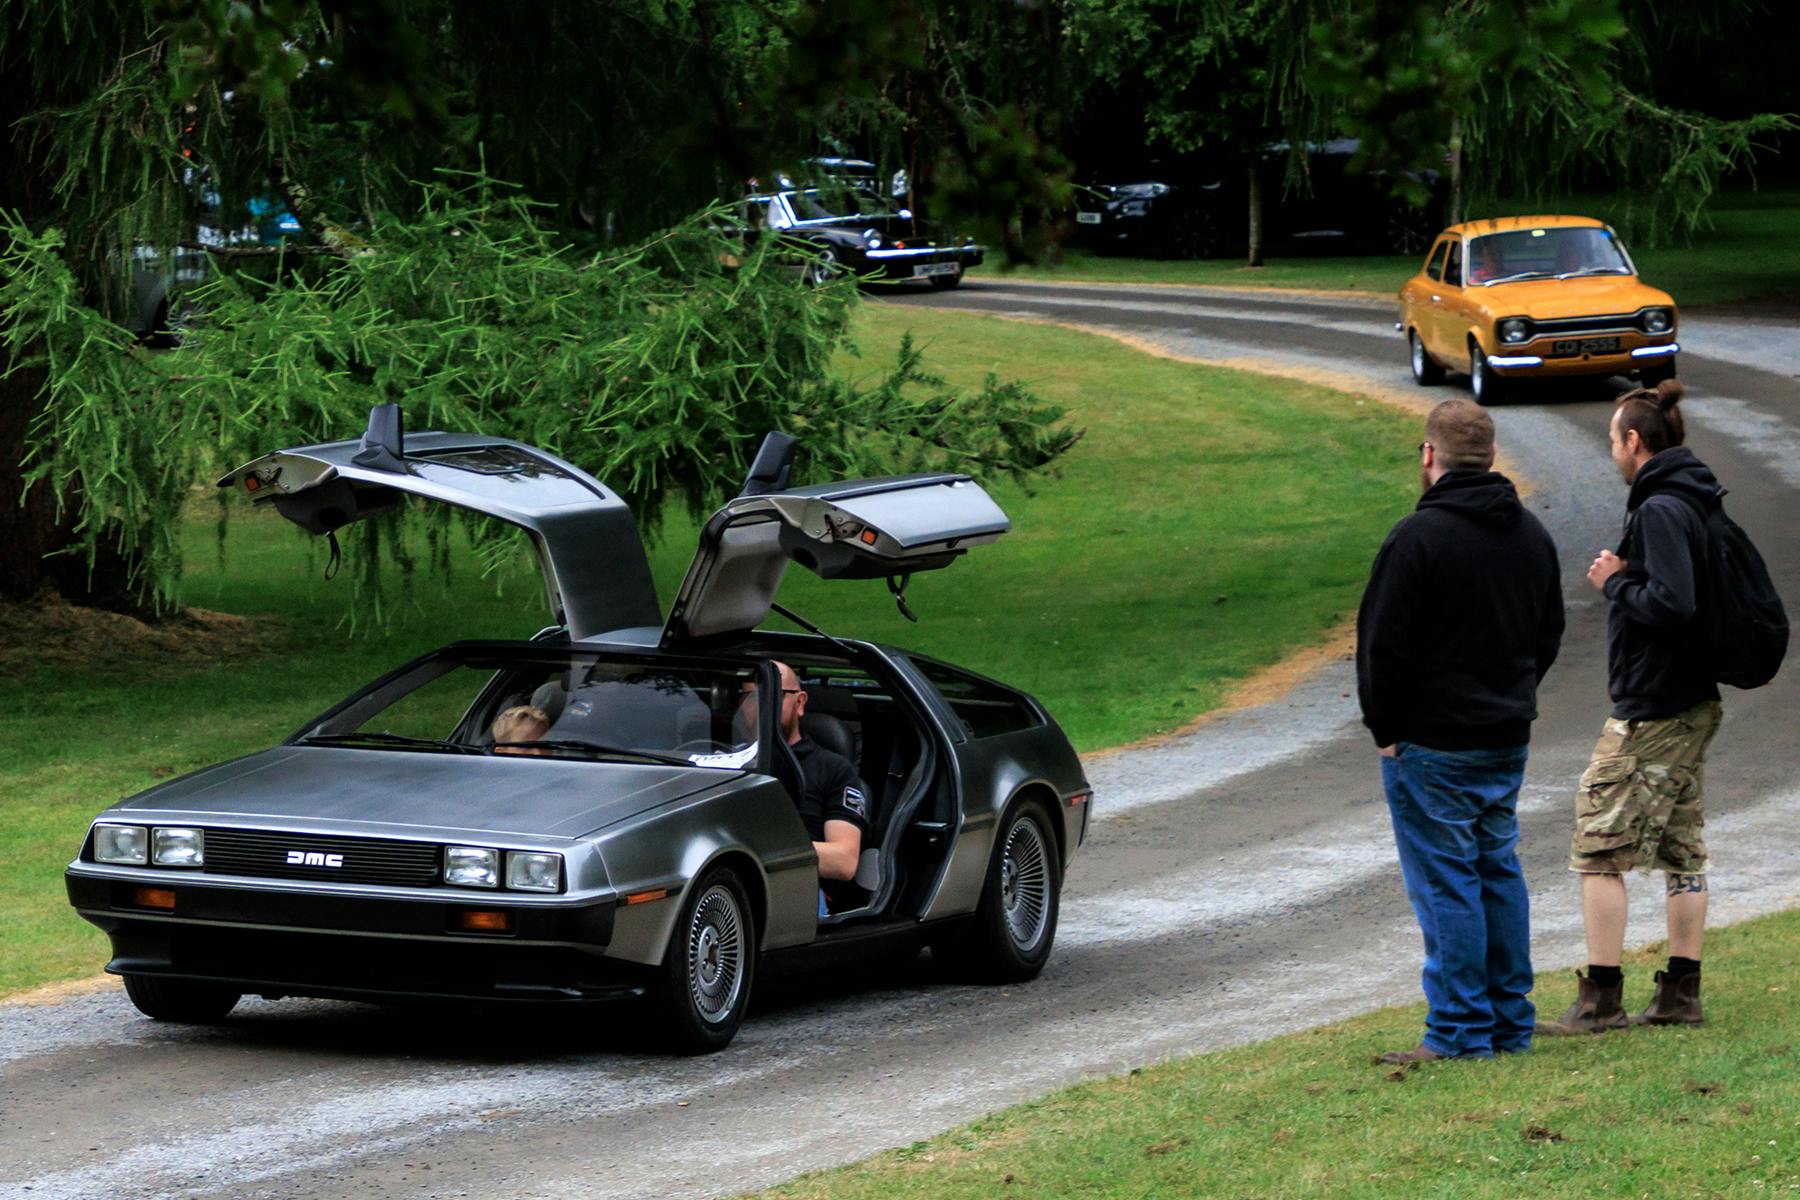 Kilbroney car show DeLorean